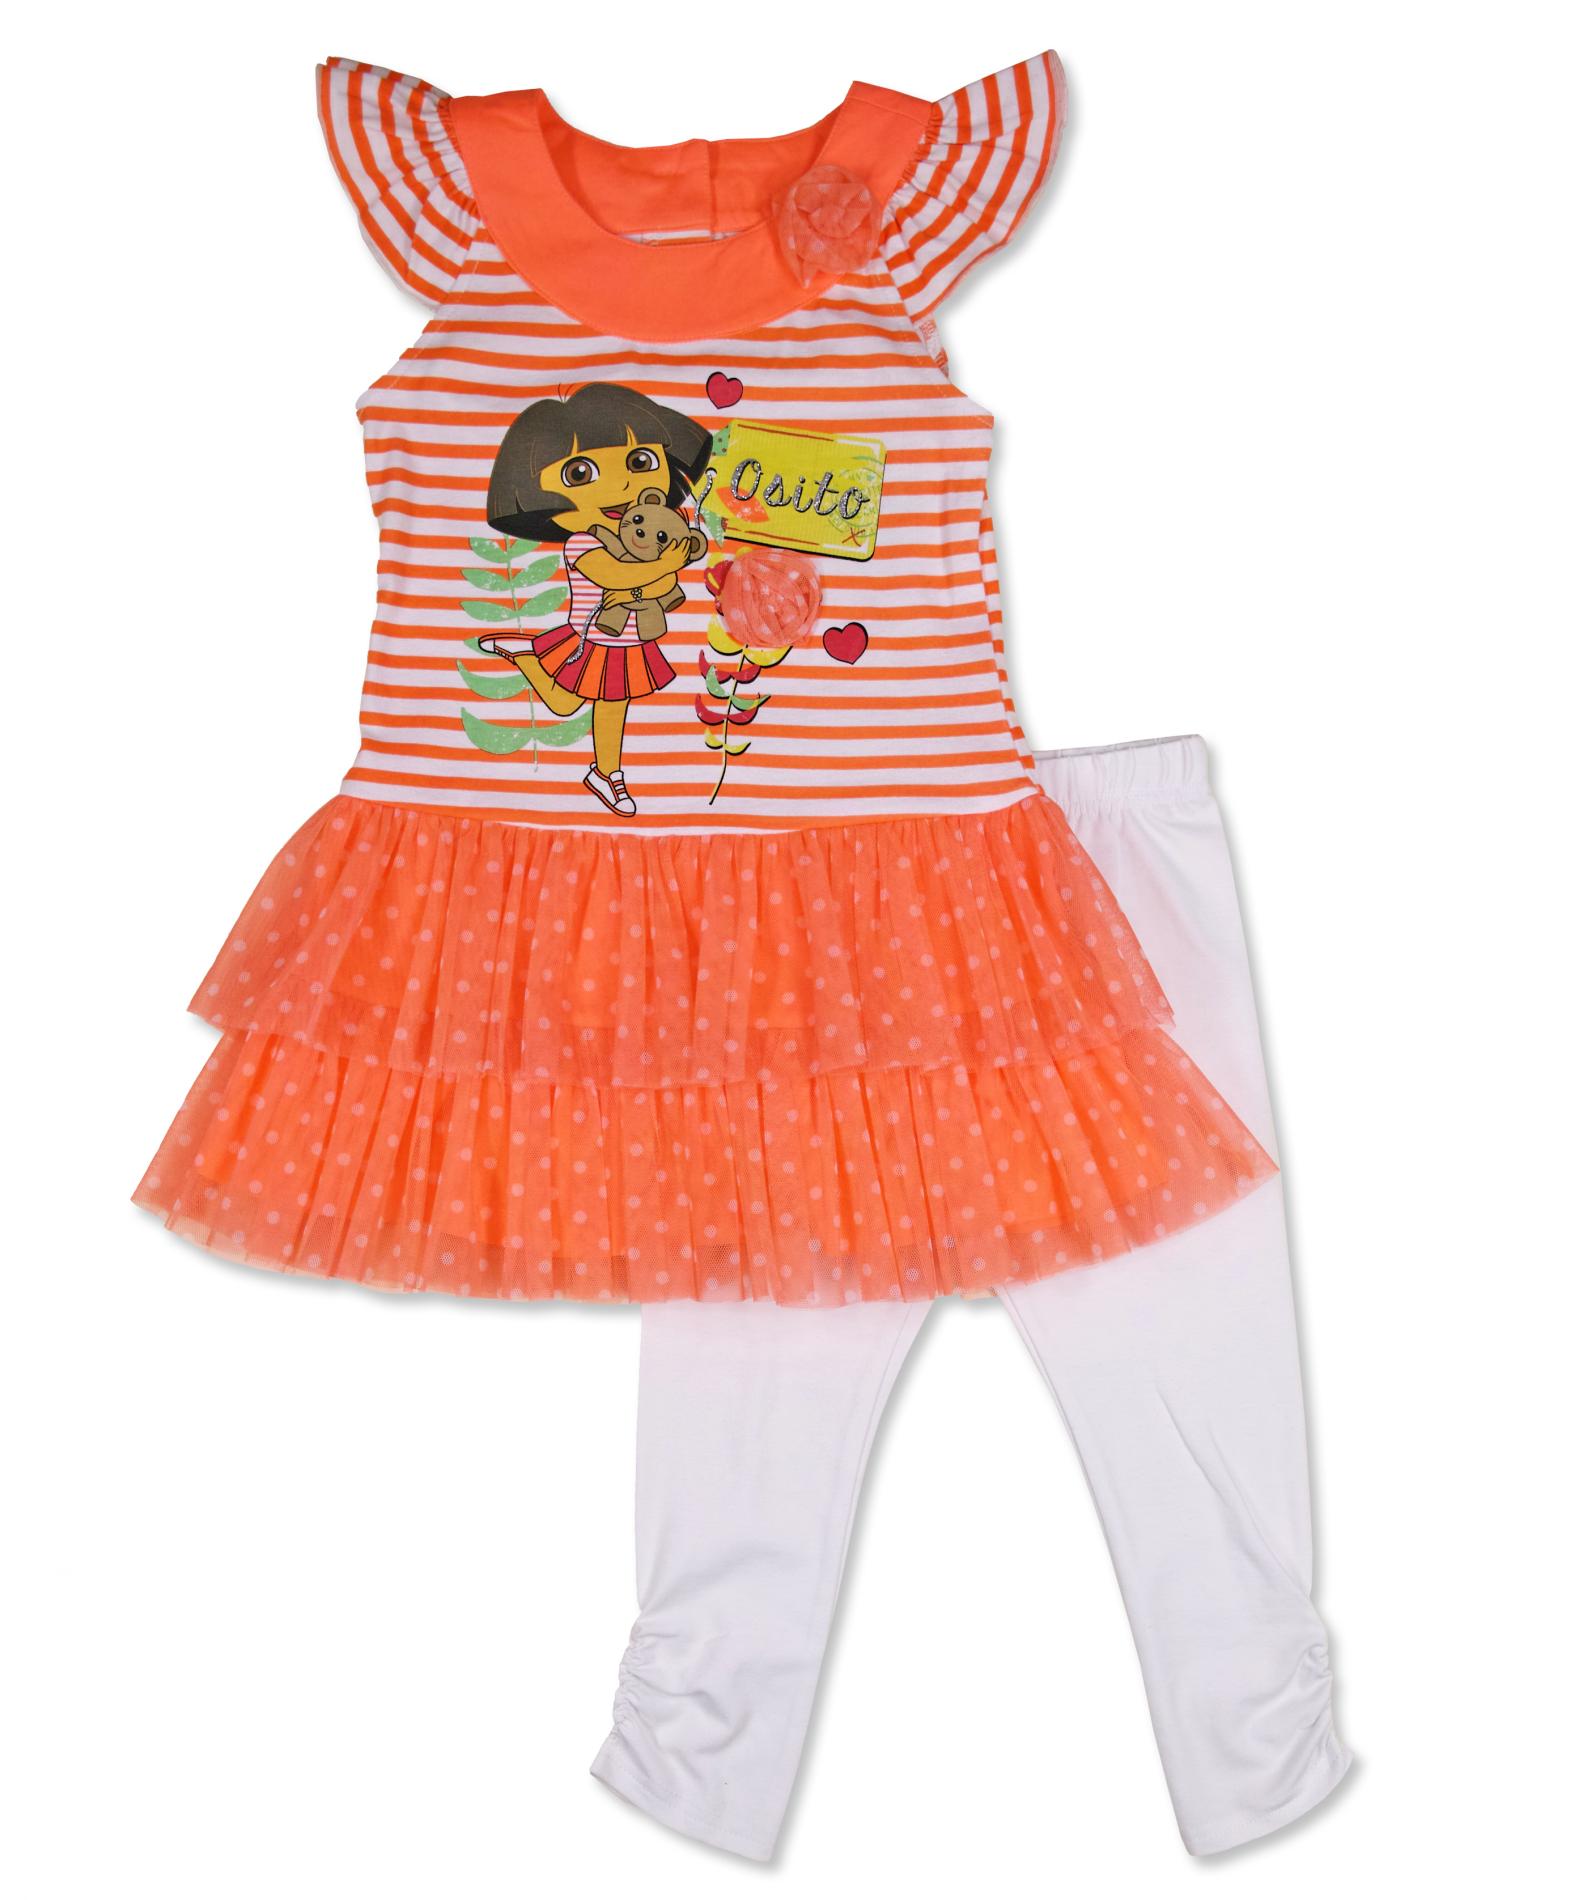 Nickelodeon Dora the Explorer Girl's Skirt Top & Leggings - Bear